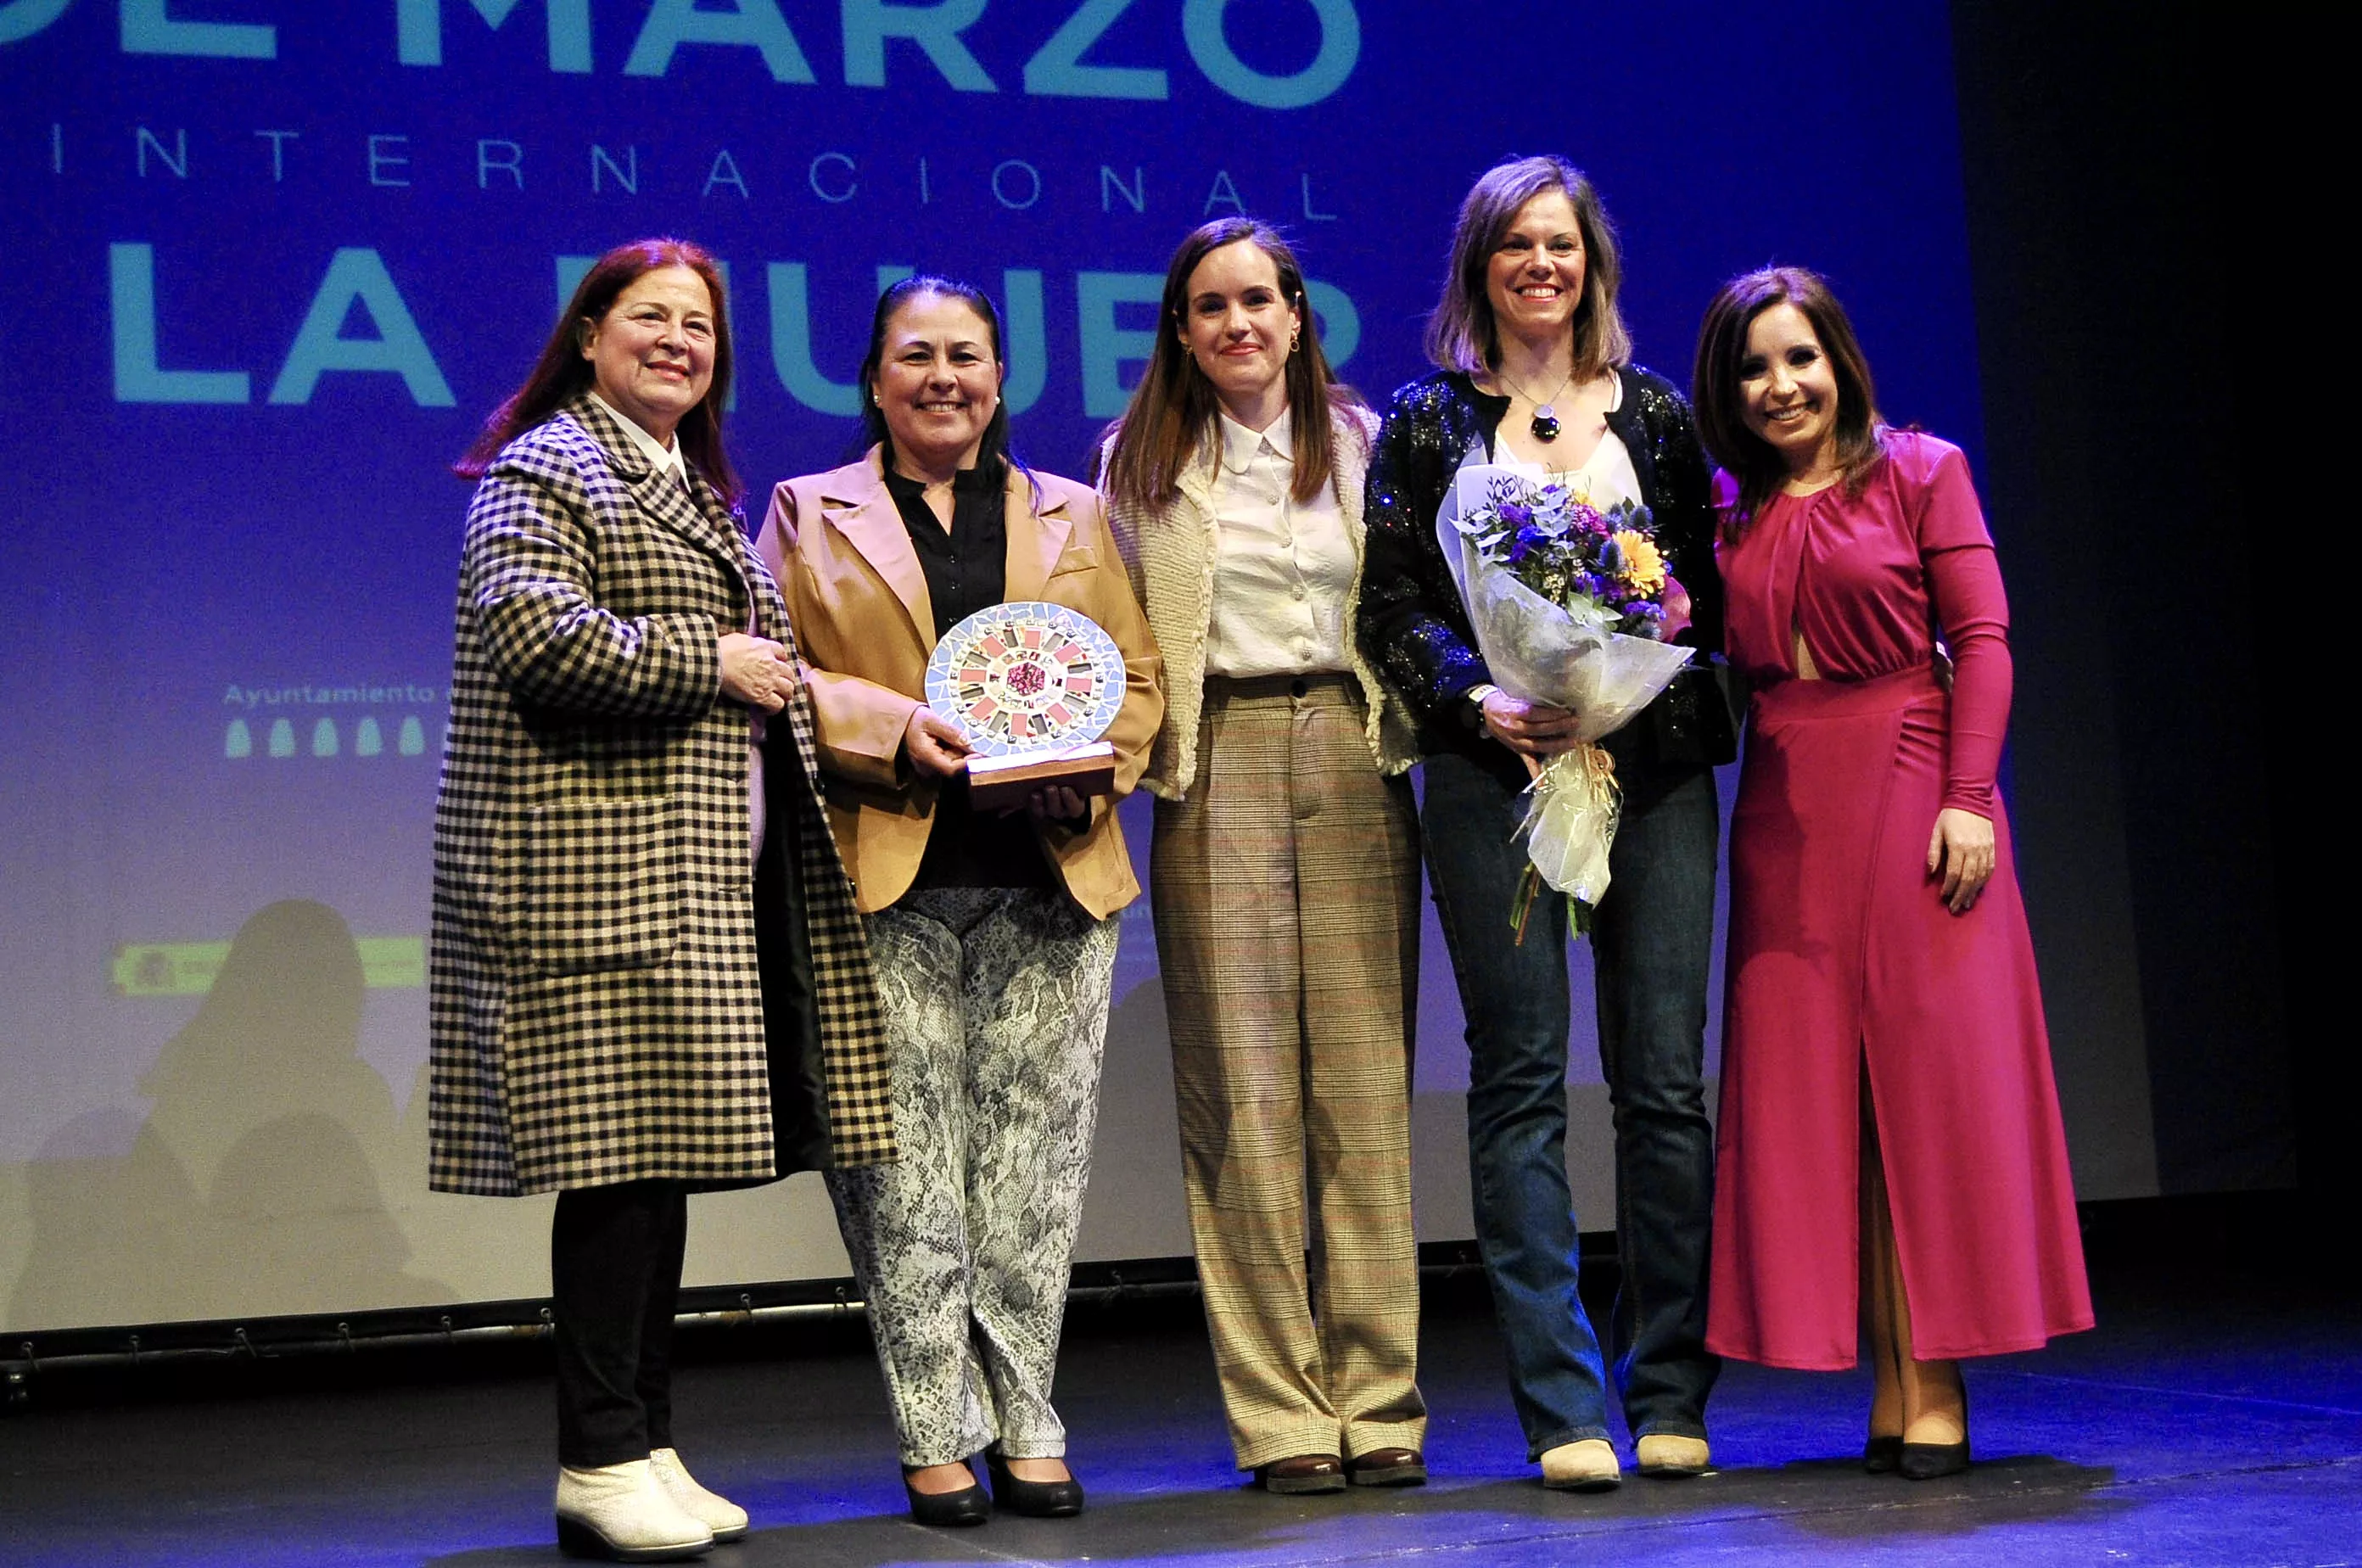 8M: Acto Día Internacional de la Mujer en Lucena